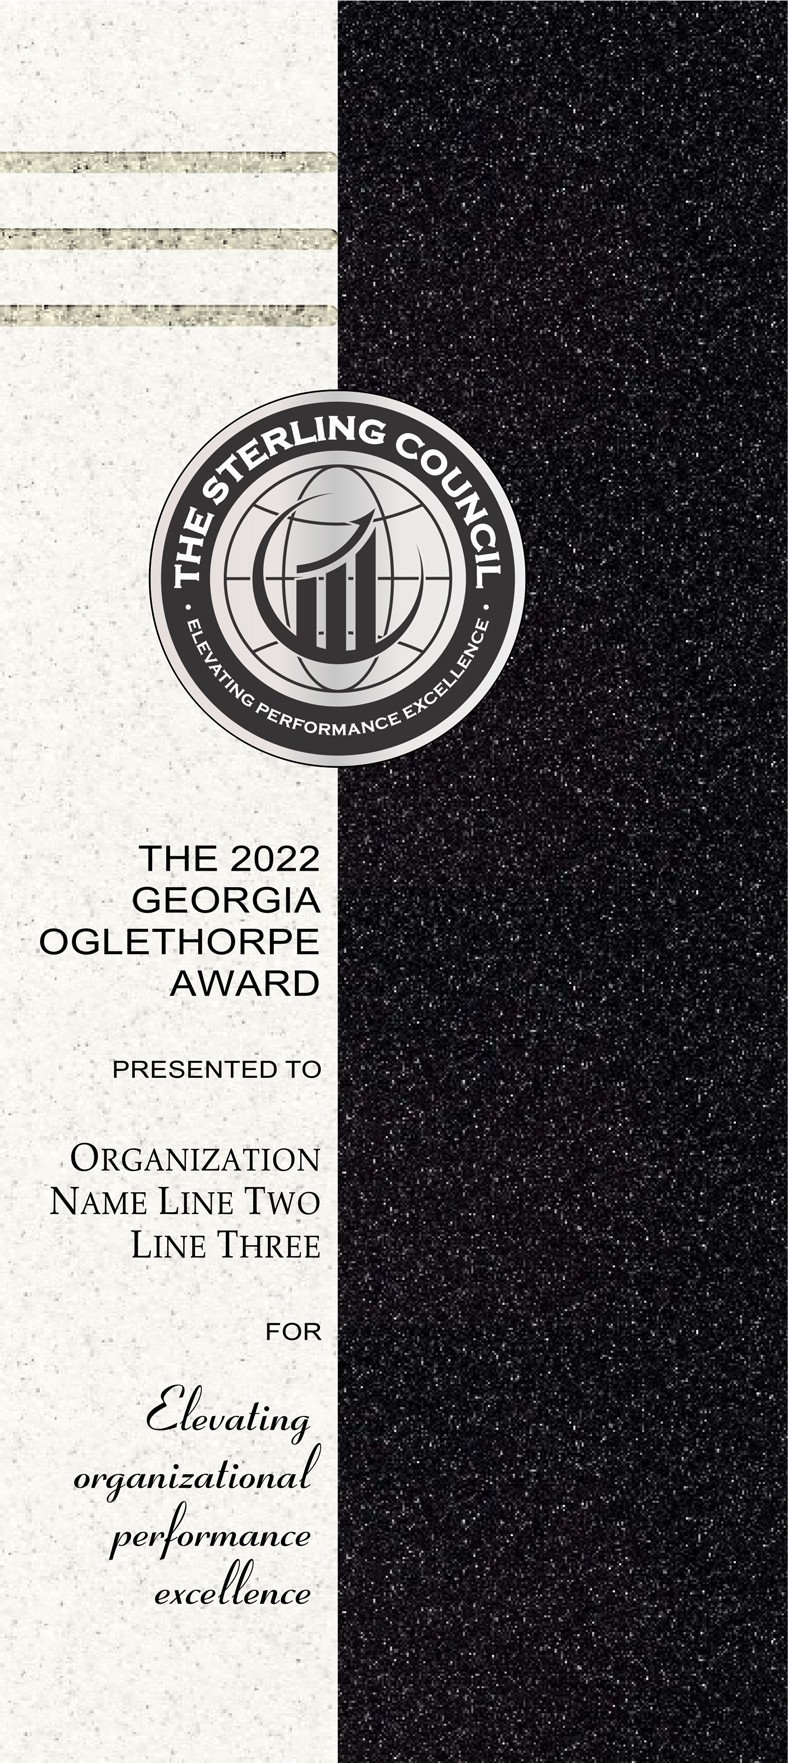 Oglethorpe Award